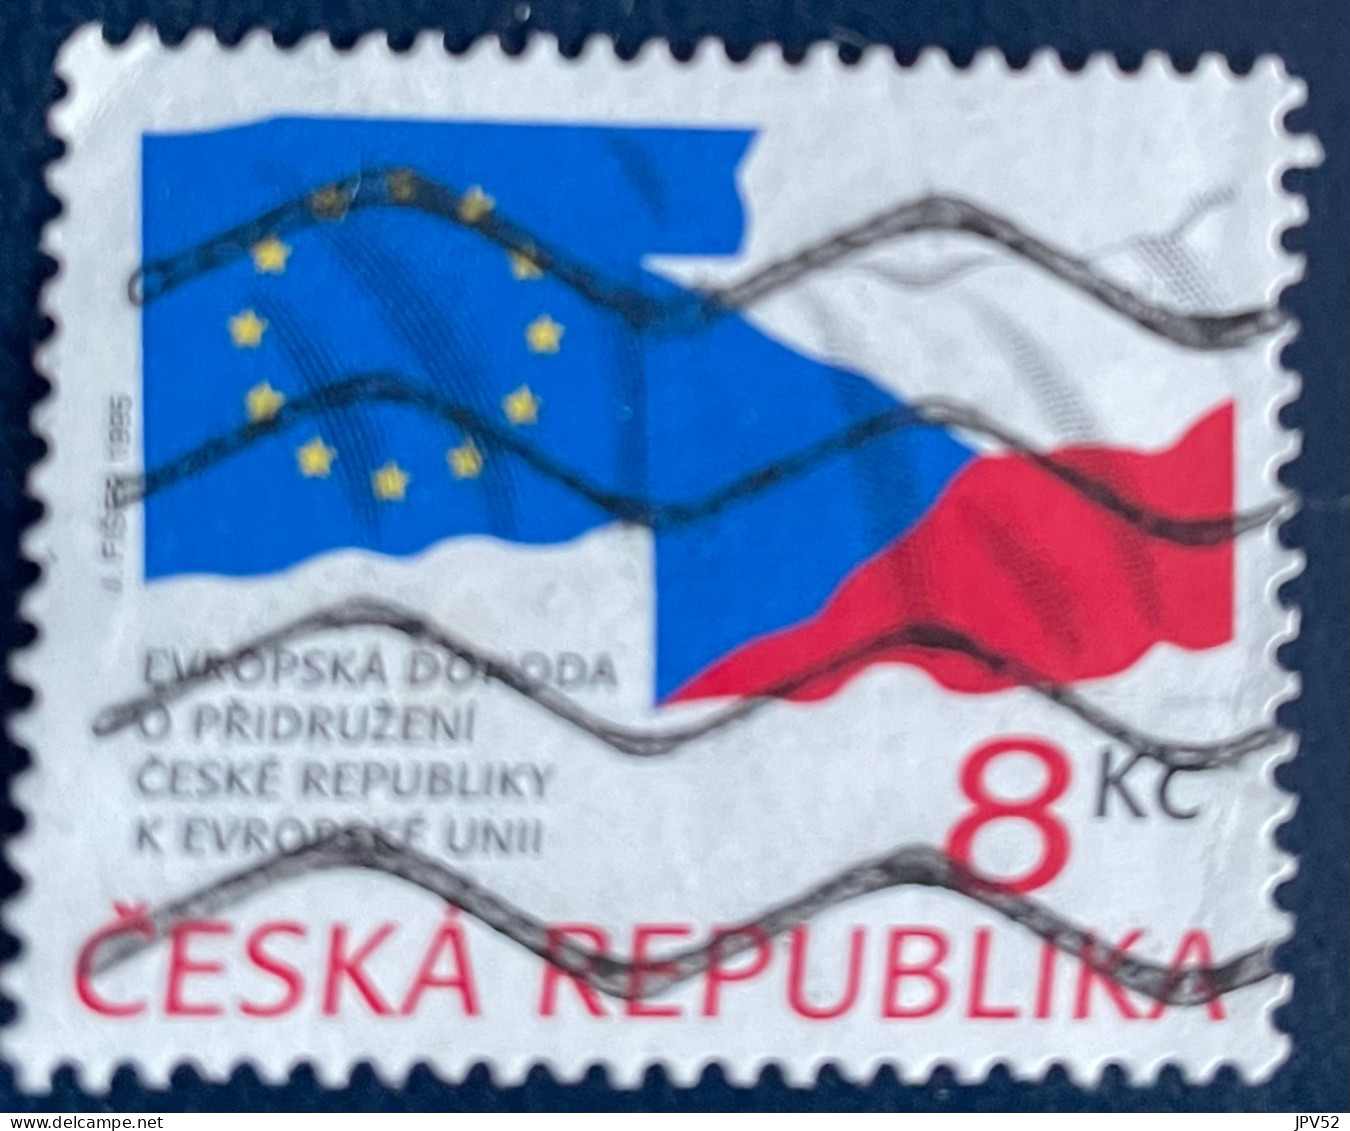 Ceska Republika - Tsjechië - C4/4 - 1995 - (°)used - Michel 62 - Tsjechië Lid Va EU - Usados